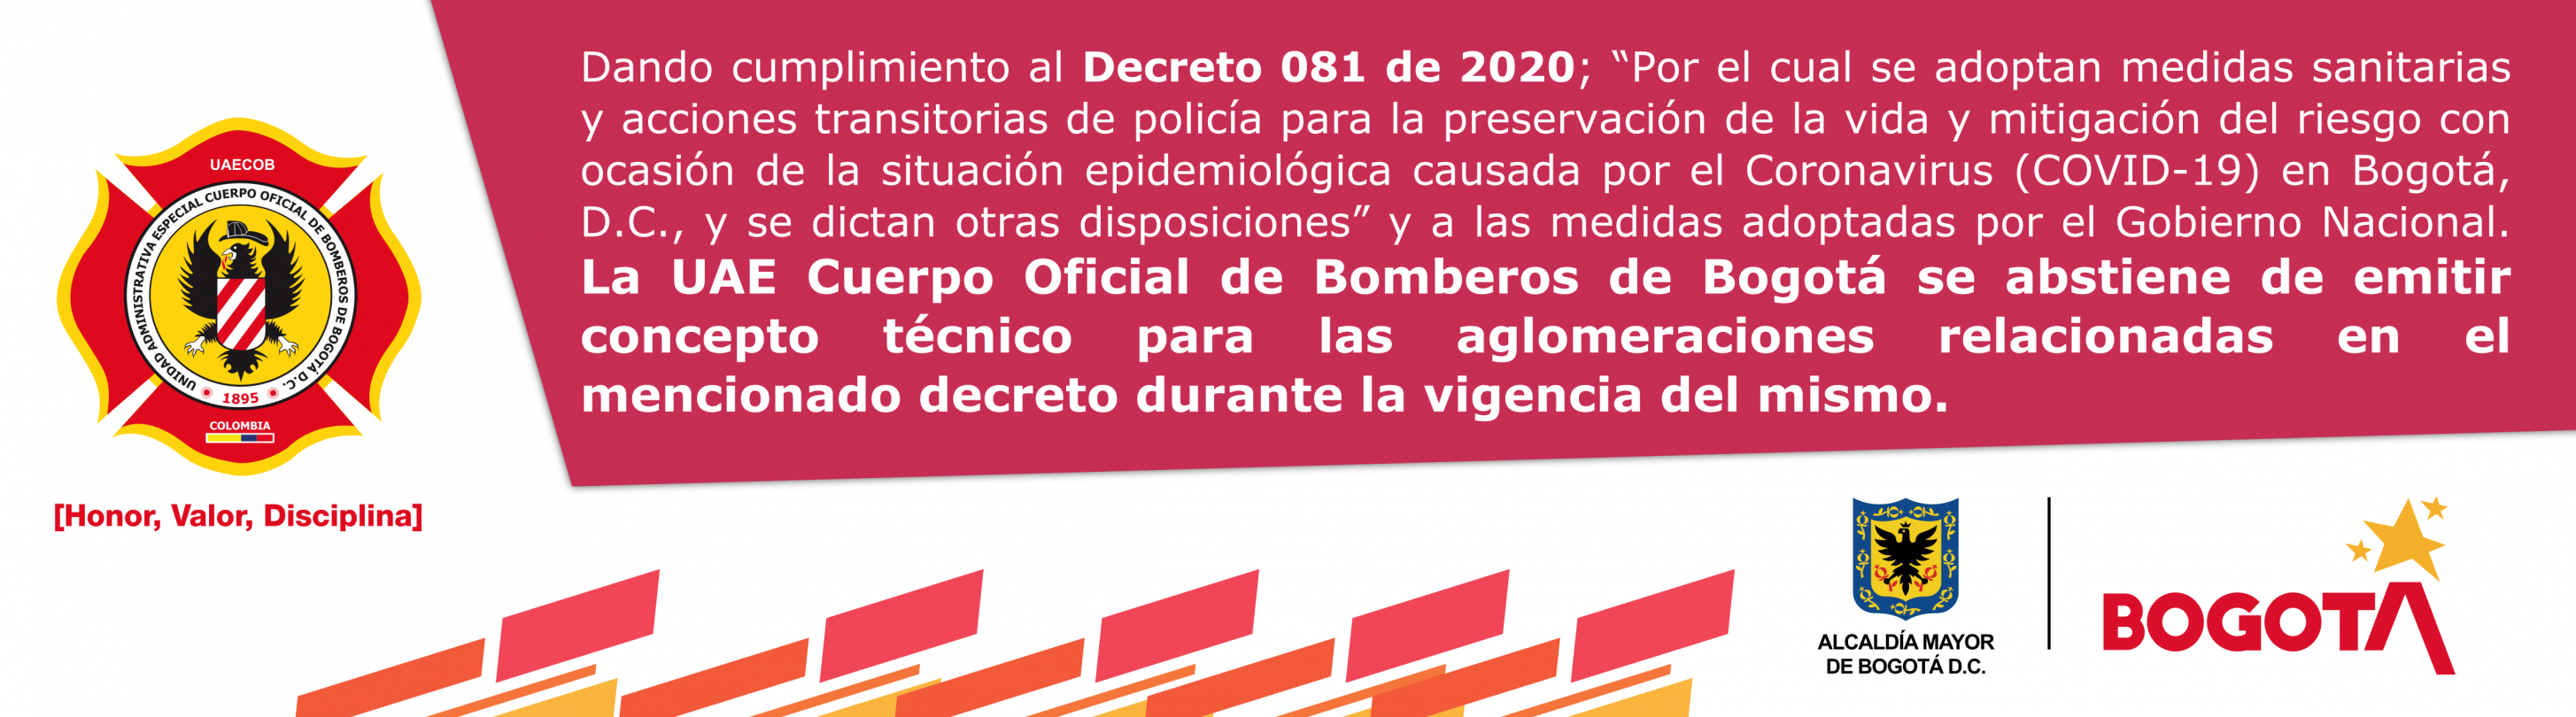 Decreto 081 de 2020